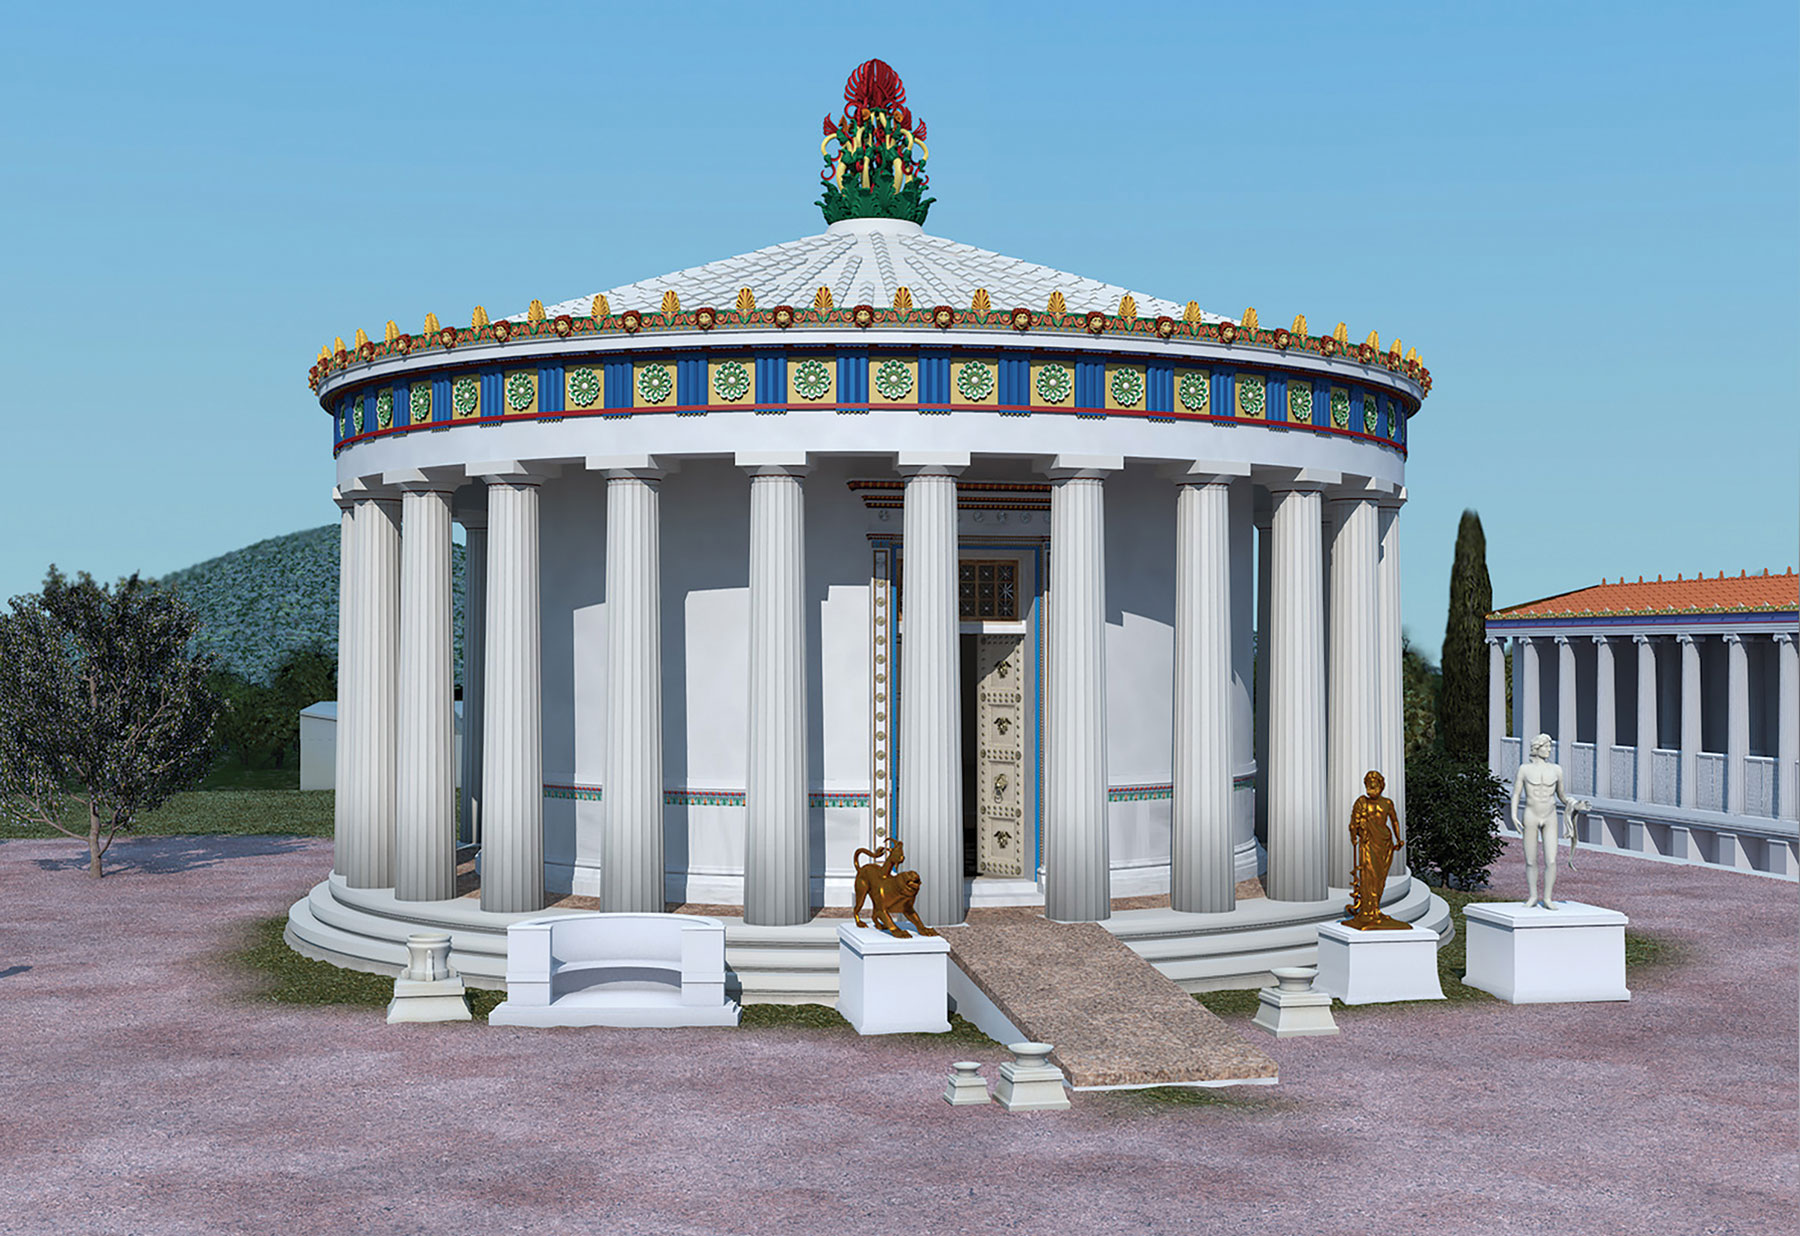 Algunos templos griegos antiguos tenían ‘rampas de discapacidad’